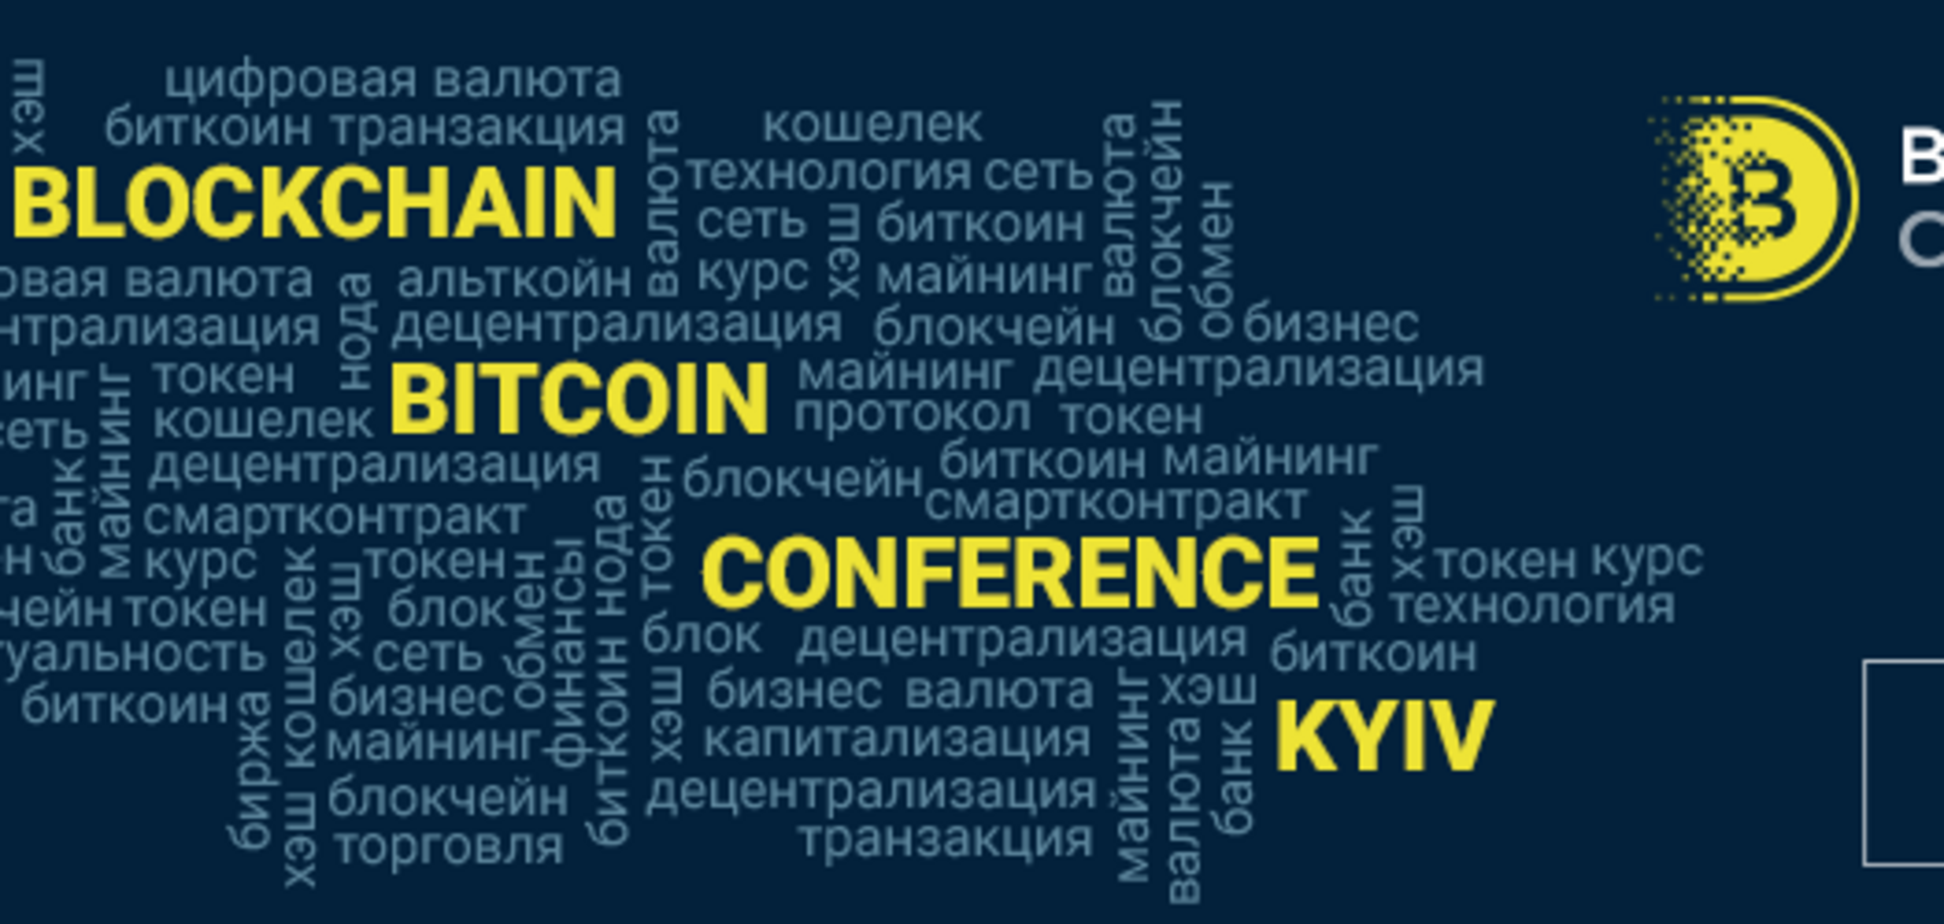 Крупнейшая в Украине выставка-конференция по блокчейну и ICO соберёт более 2 000 участников